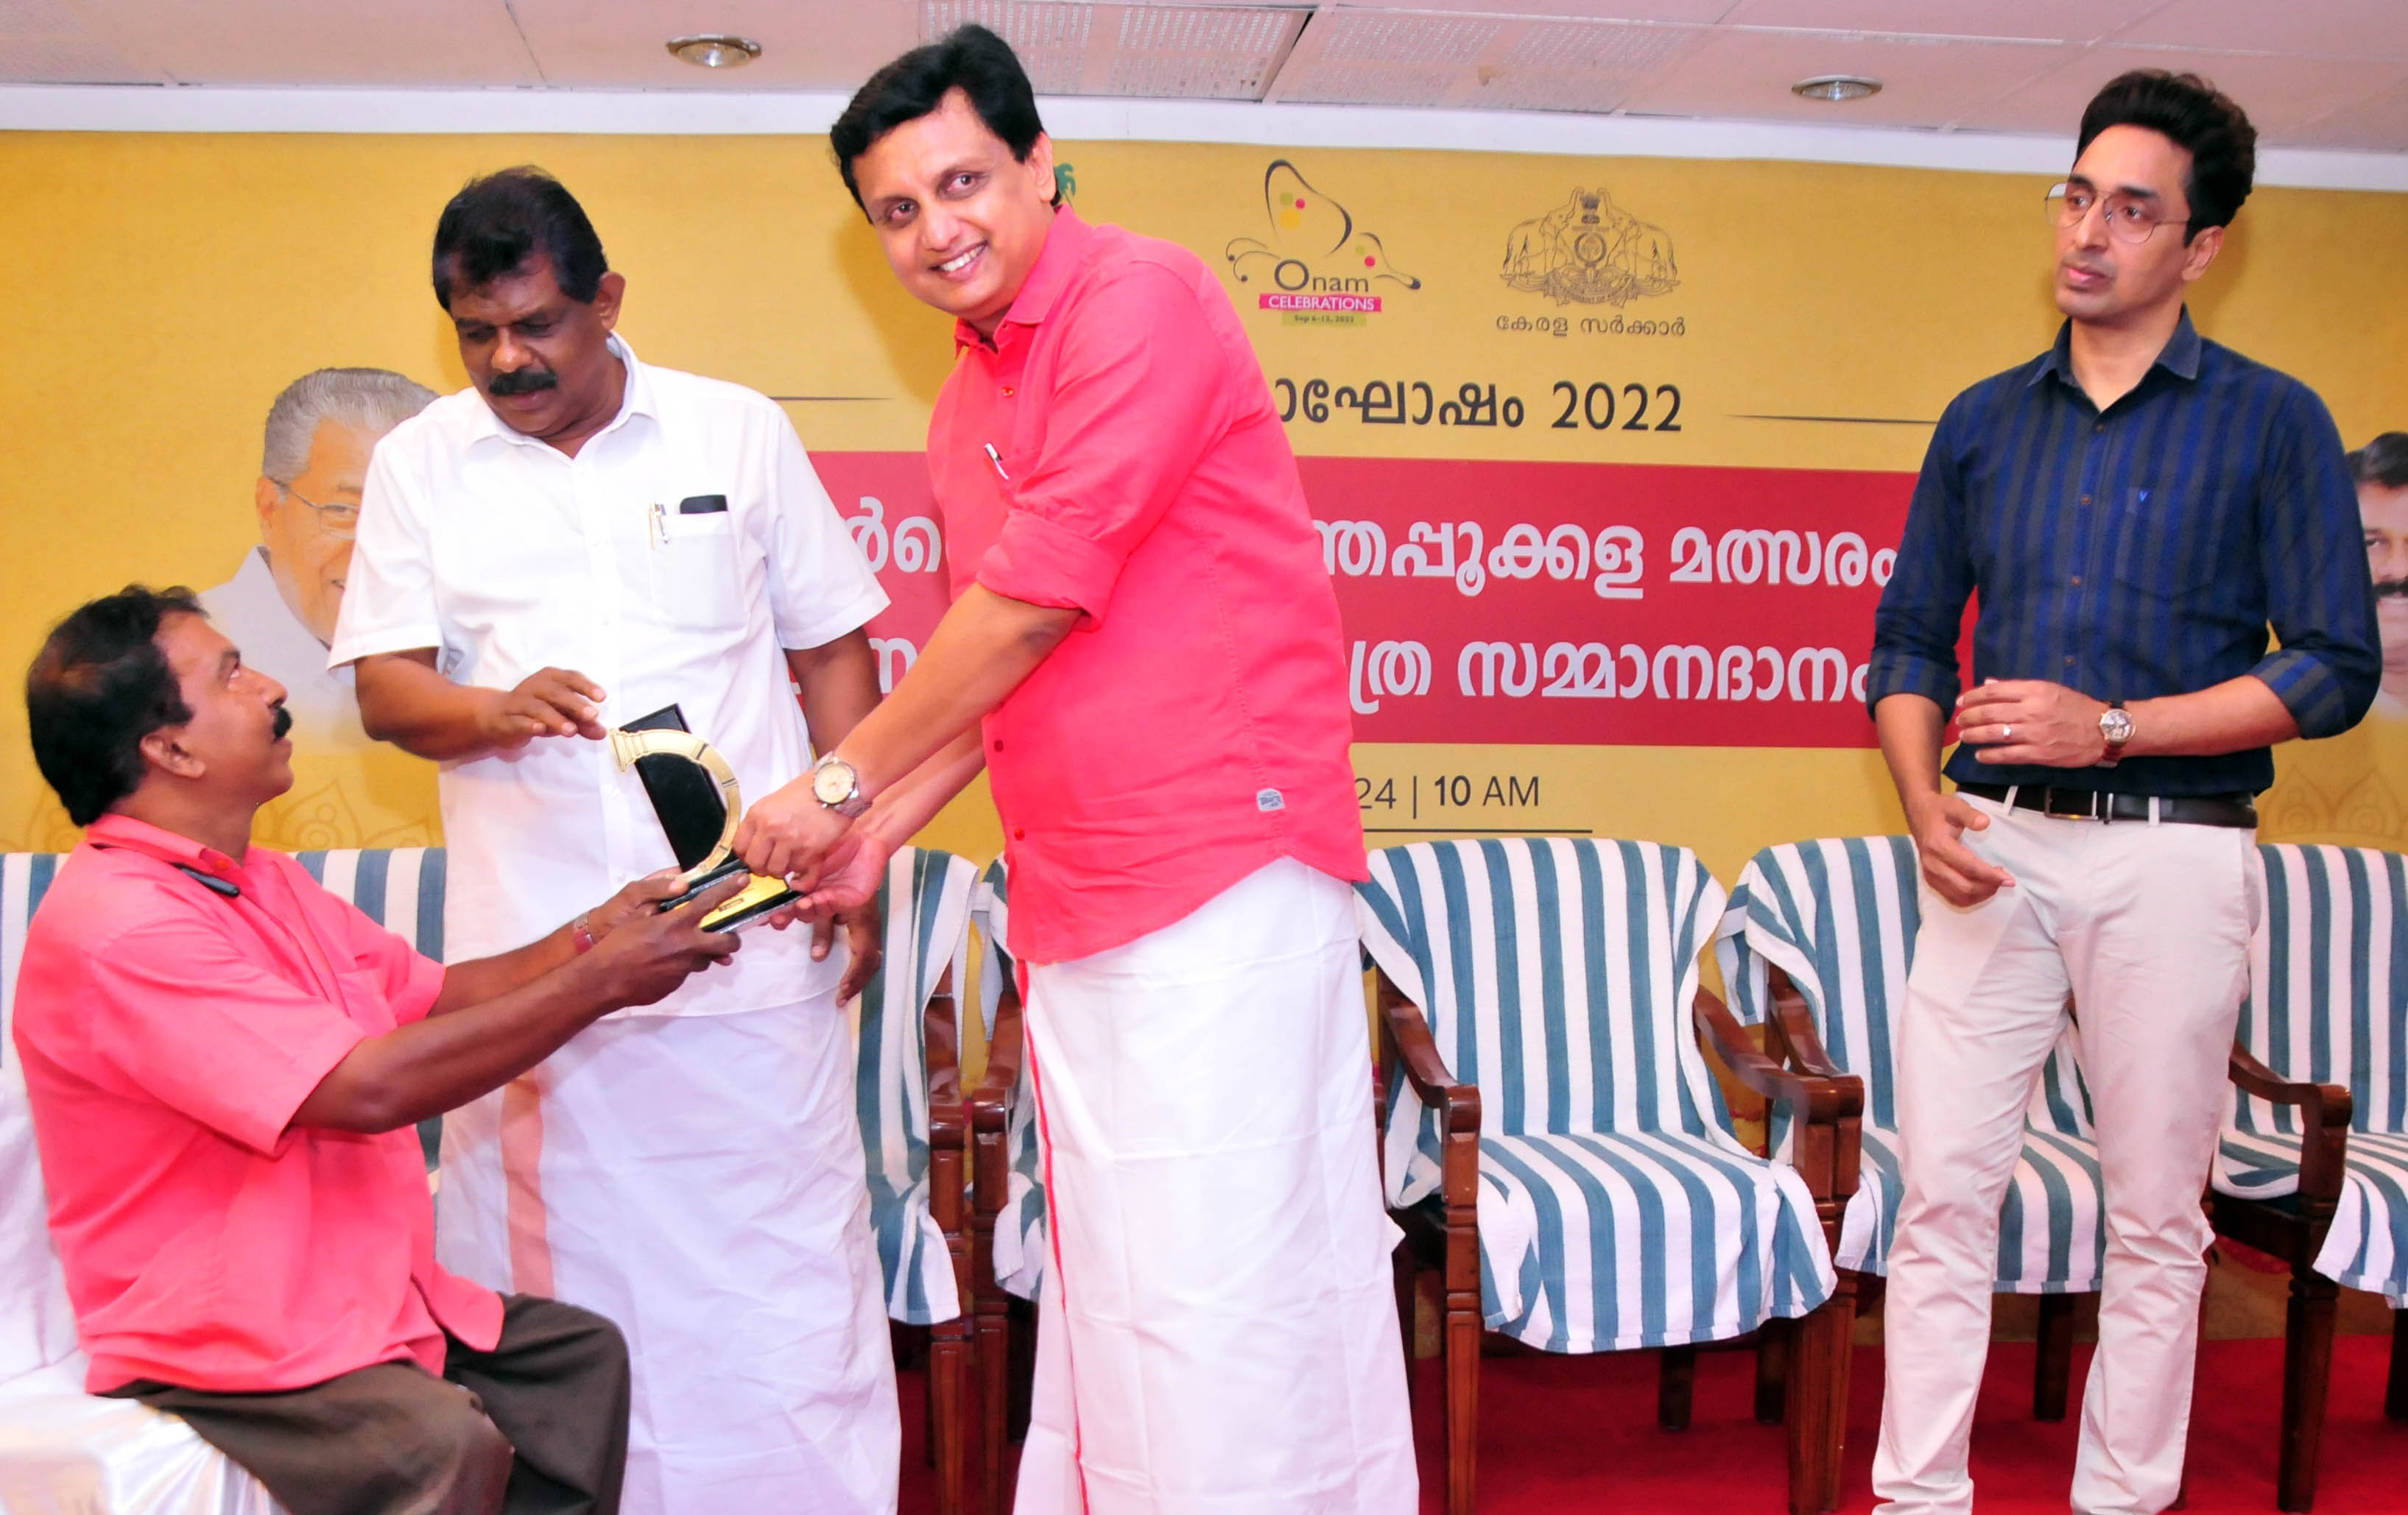 Kerala Tourism to market Onam celebrations globally: Mohamed Riyas